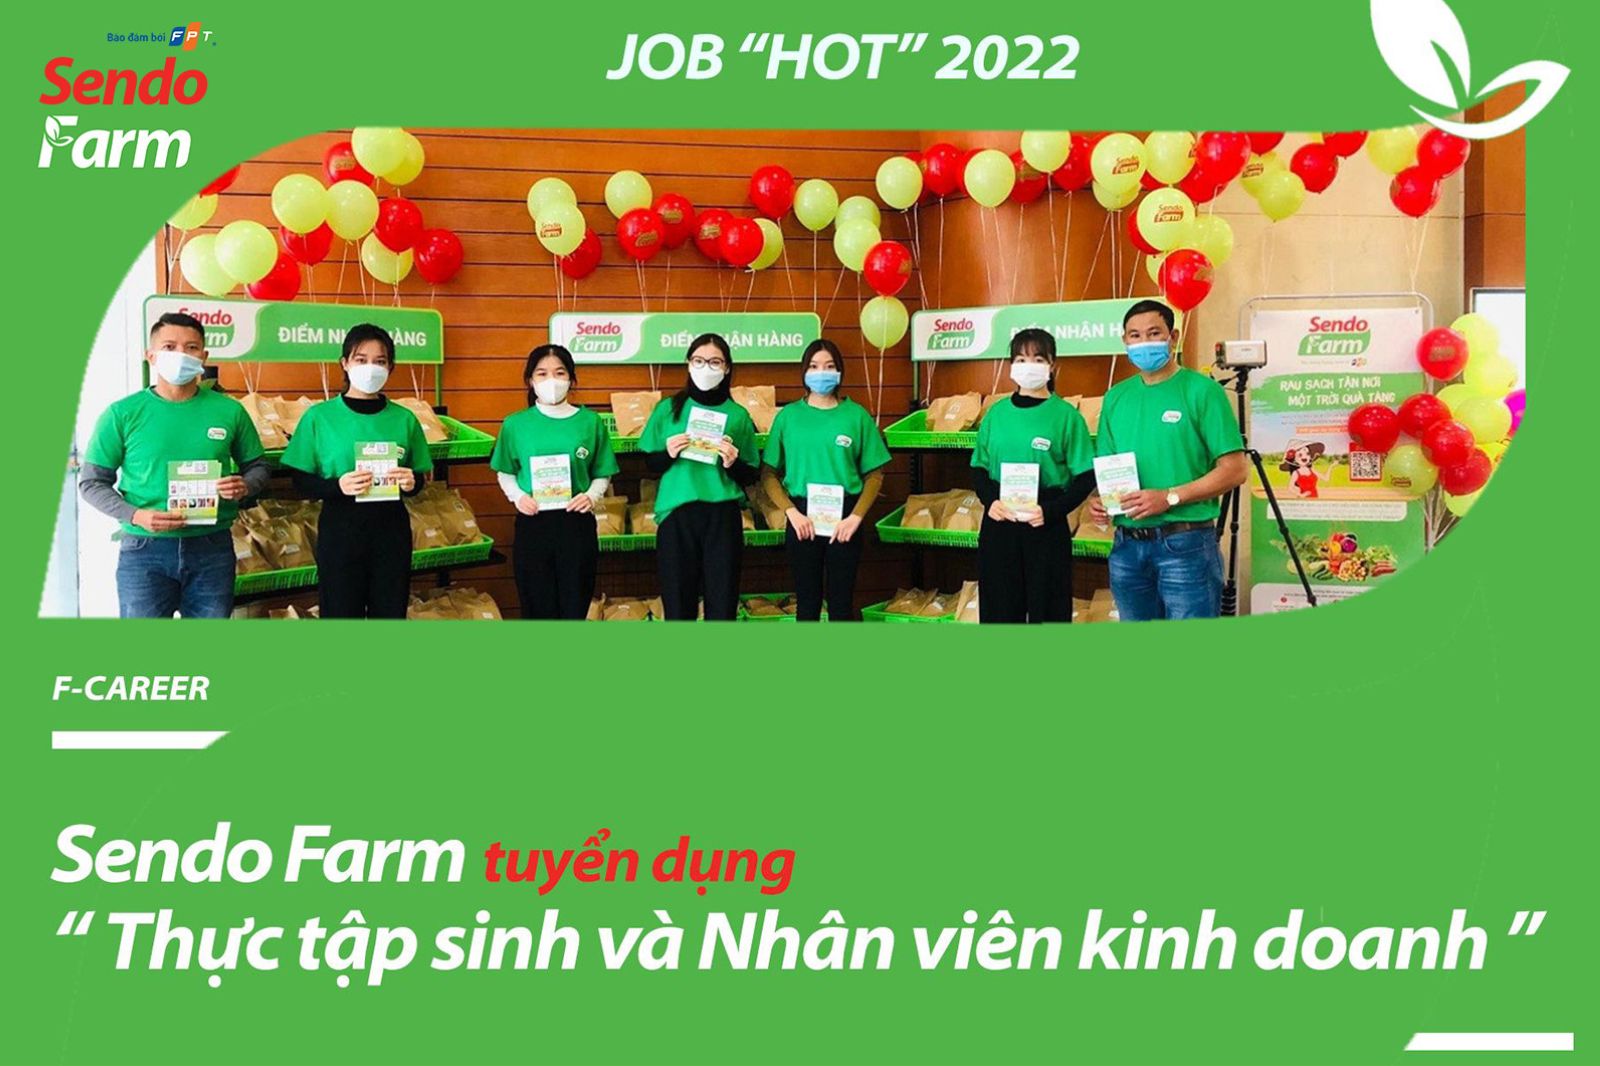 Sendo Farm HN - Dự án trọng điểm của Tập đoàn FPT thông báo tuyển dụng Nhân viên kinh doanh